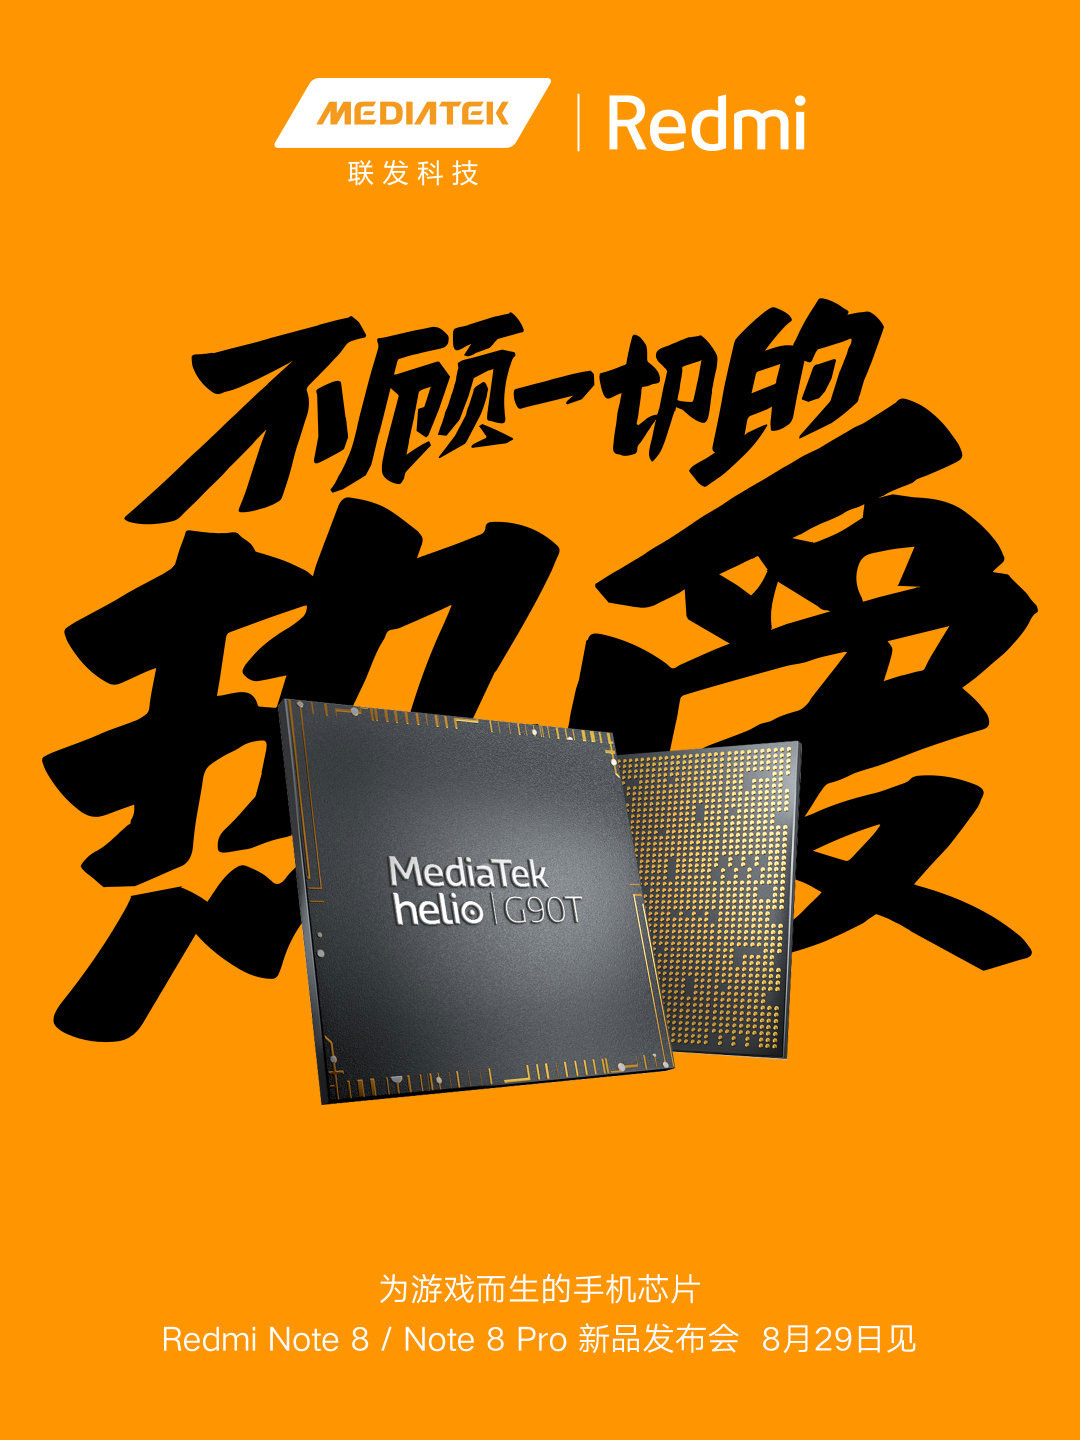 Redmi Note 8 sẽ được
trang bị chip xử lý Helio G90T của MediaTek